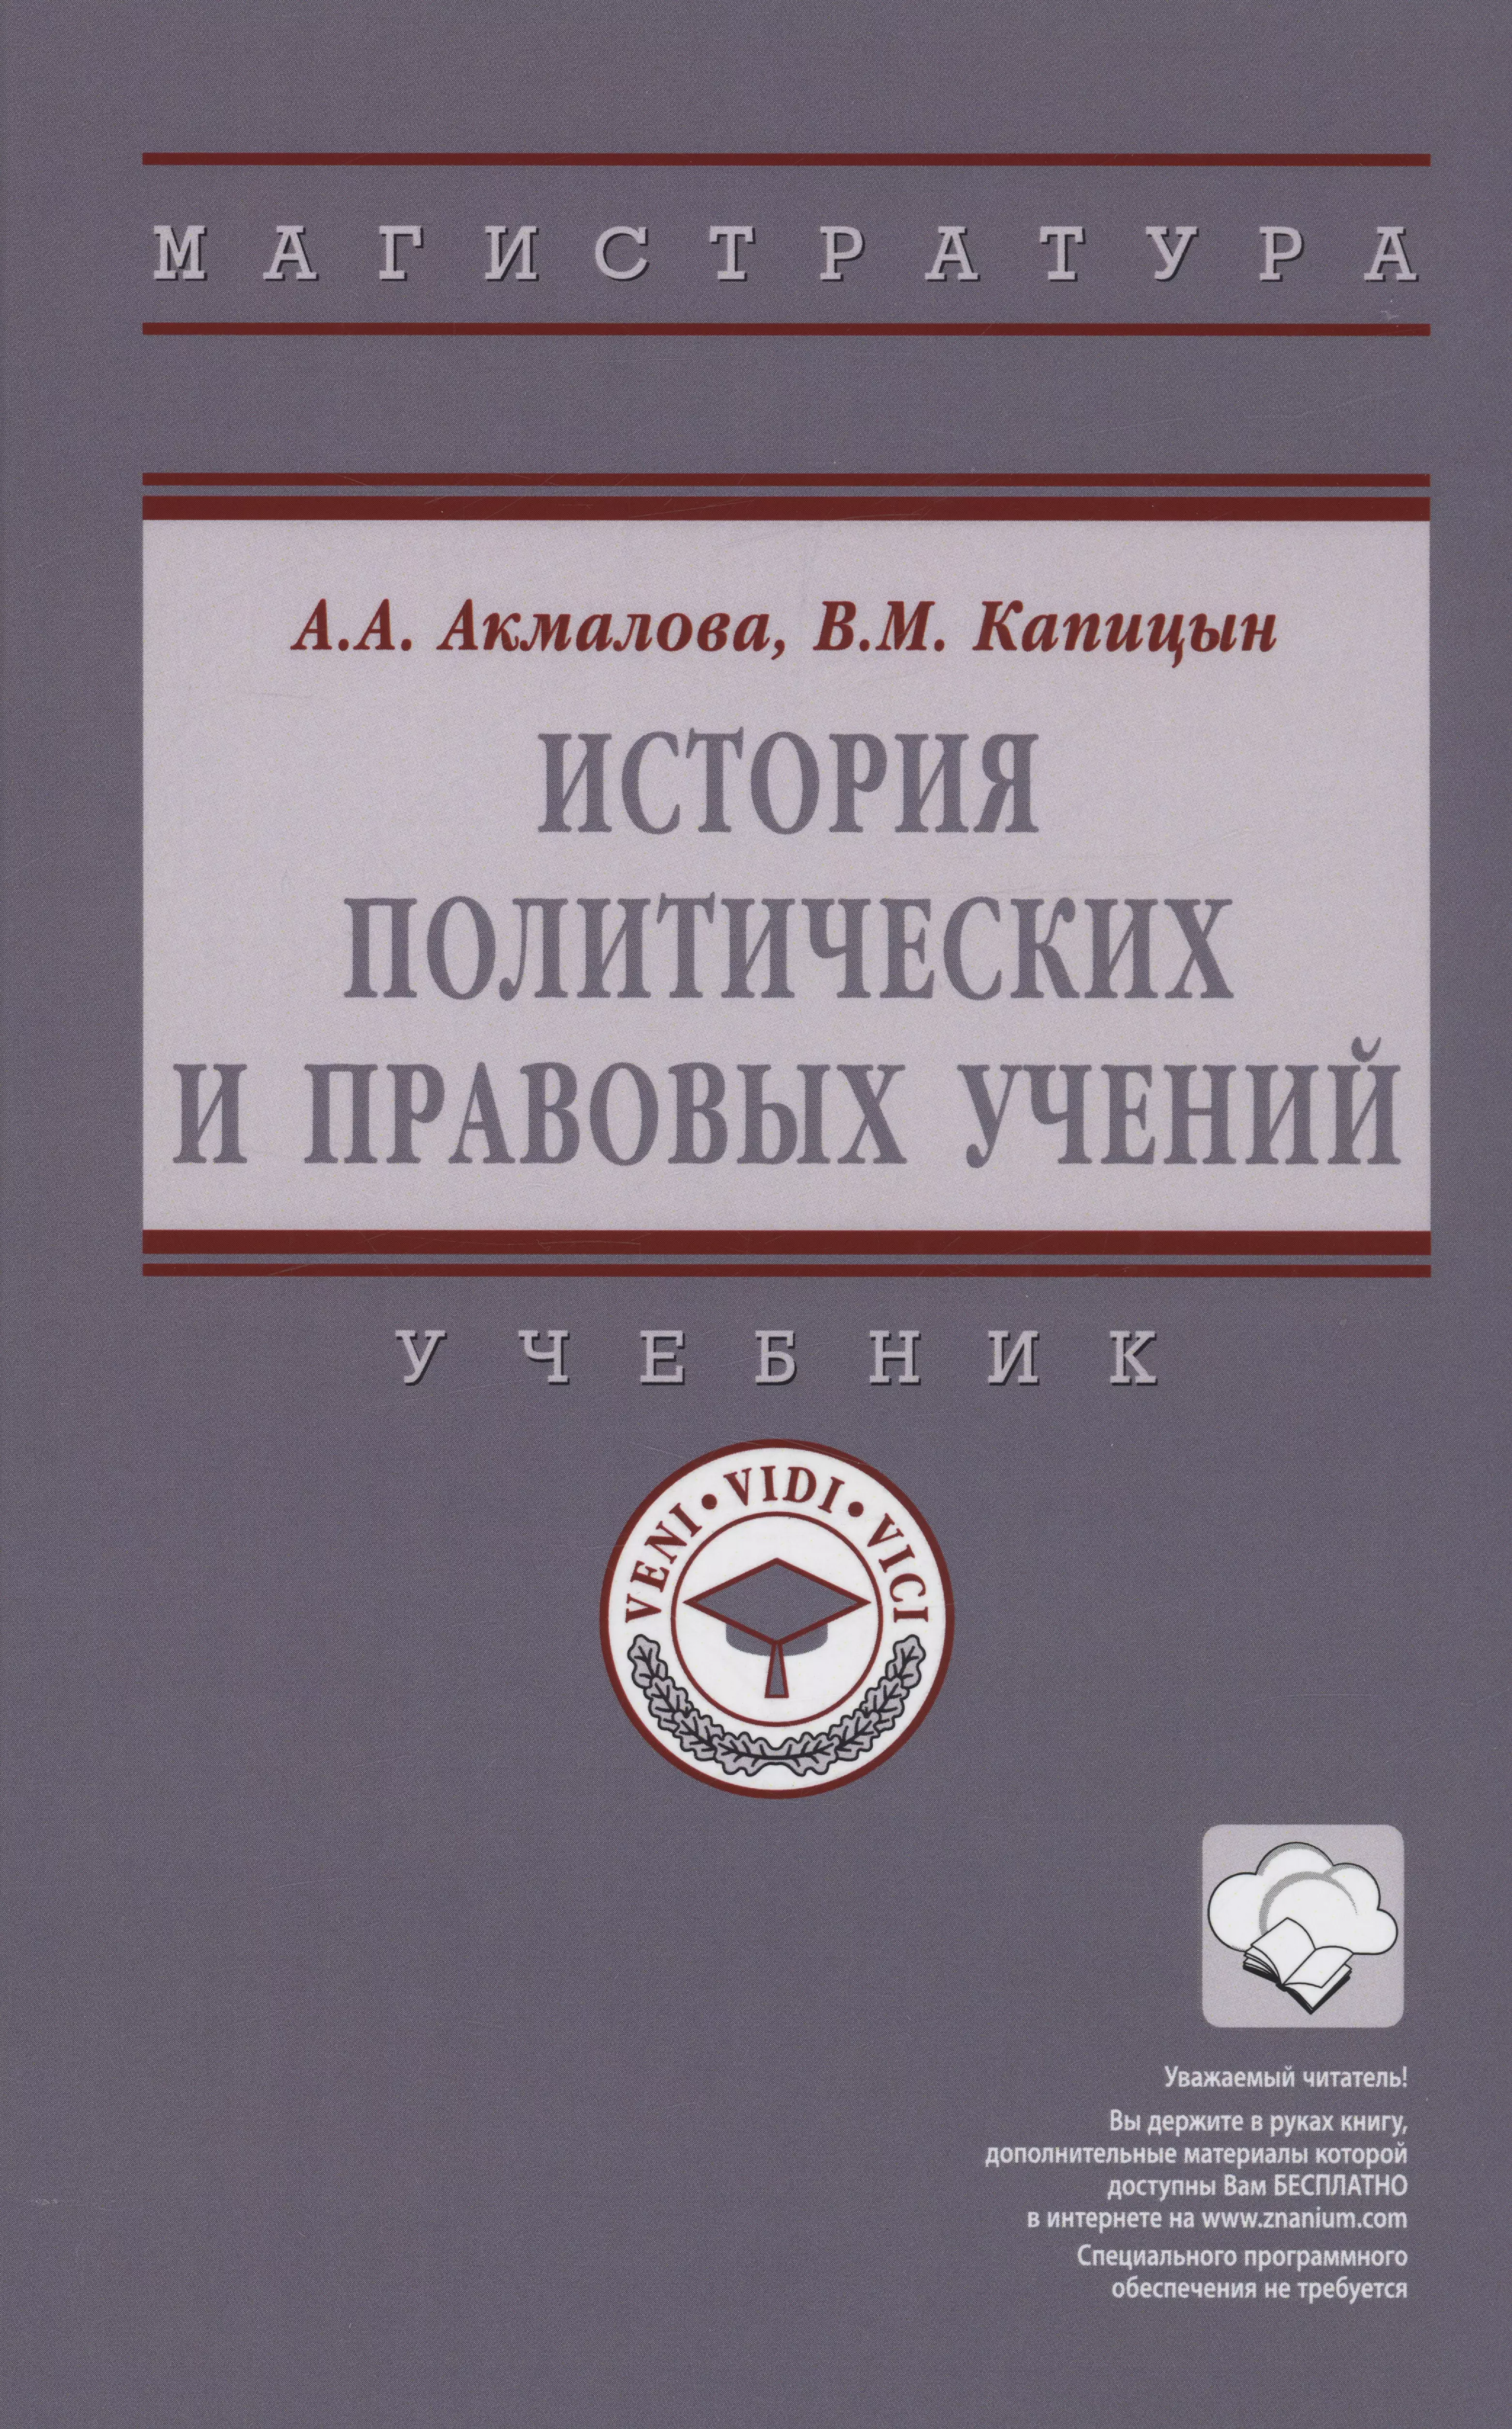 Капицын В.М. - История политических и правовых учений: Учебник